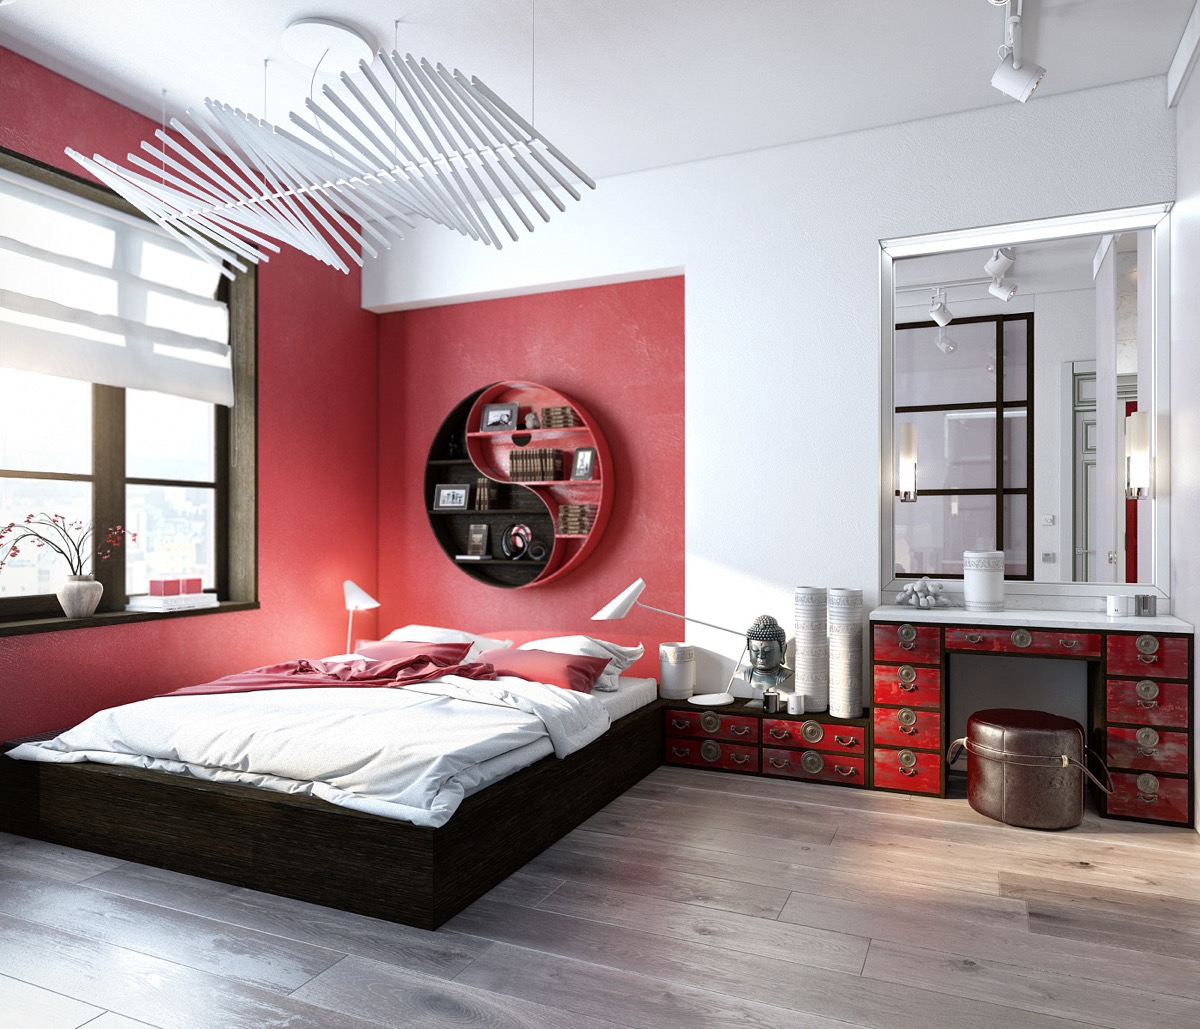 Khối màu đỏ quanh giường tạo cảm giác khép kín và ấm cúng trong không gian khá rộng. Phía bàn trang điểm chọn sơn tường màu trắng kết hợp tủ gỗ sơn đỏ cổ điển. Kệ lưu trữ Âm - Dương với 2 màu trắng đen cũng là điểm nhấn nổi bật cho bức tường.